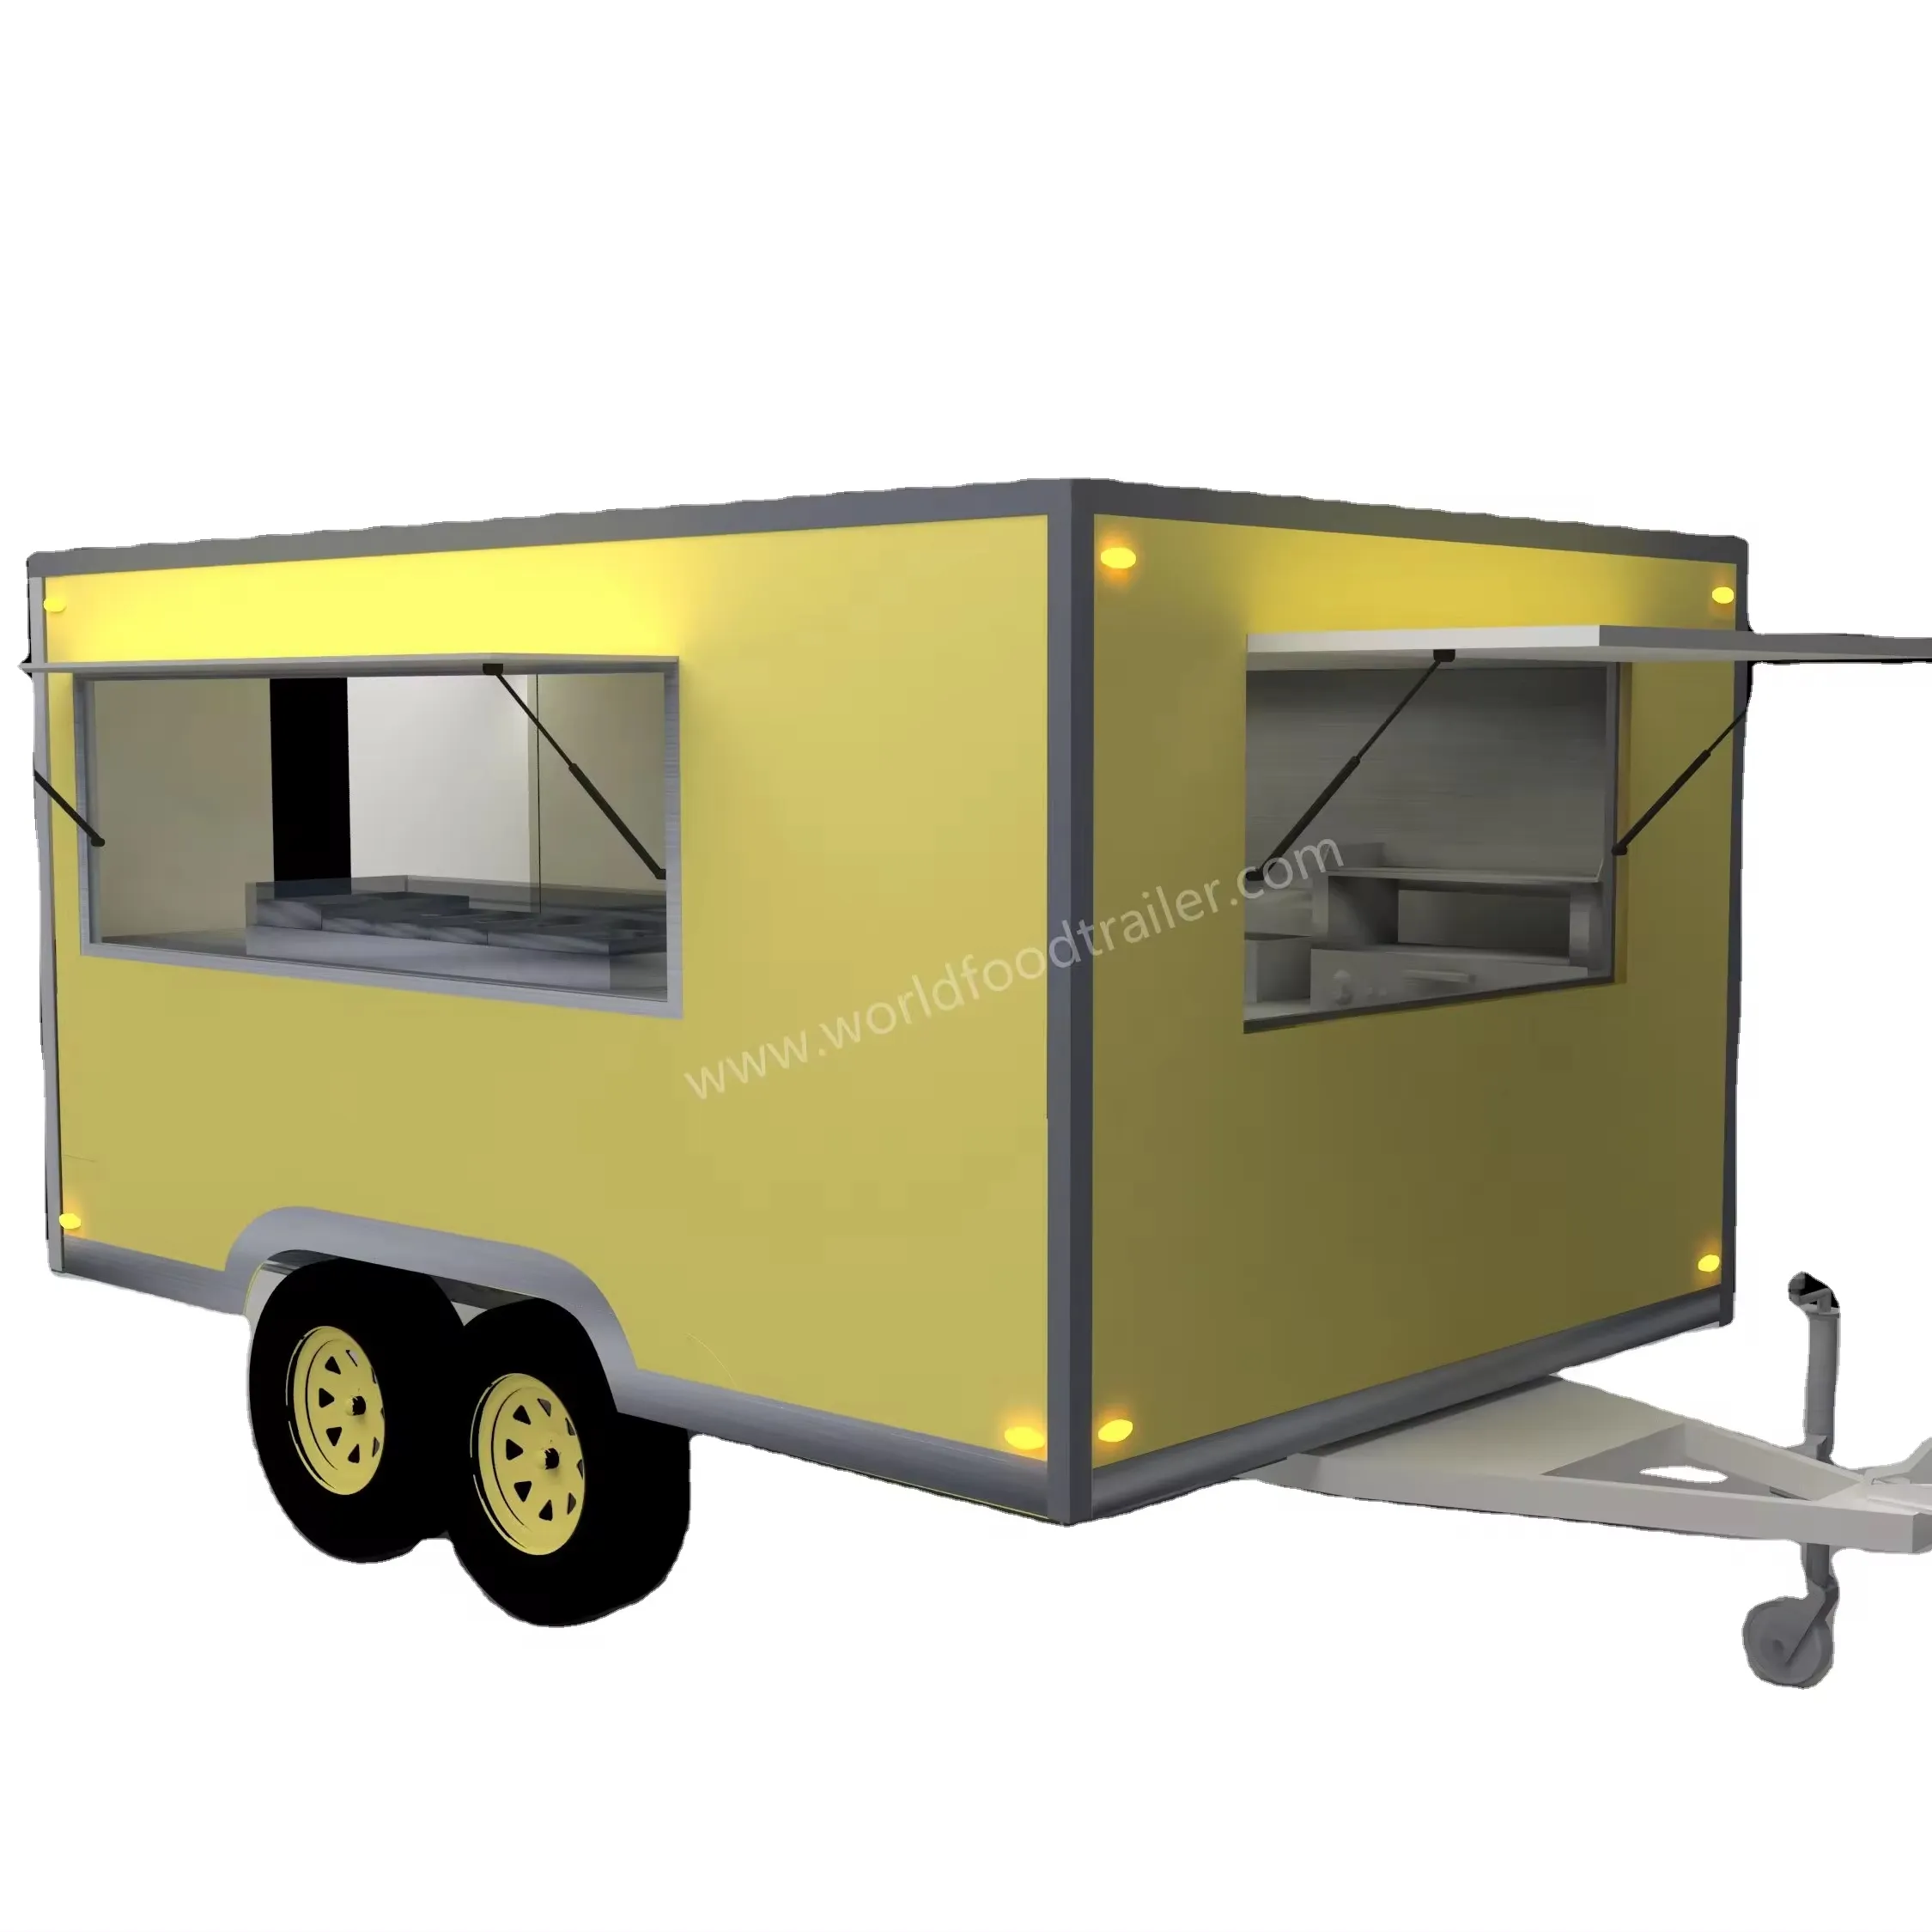 Precio al por mayor Mobile Hot Dog Food Trucks Mobile Ice Cream Food Truck Trailer Crepe Food Cart para la venta